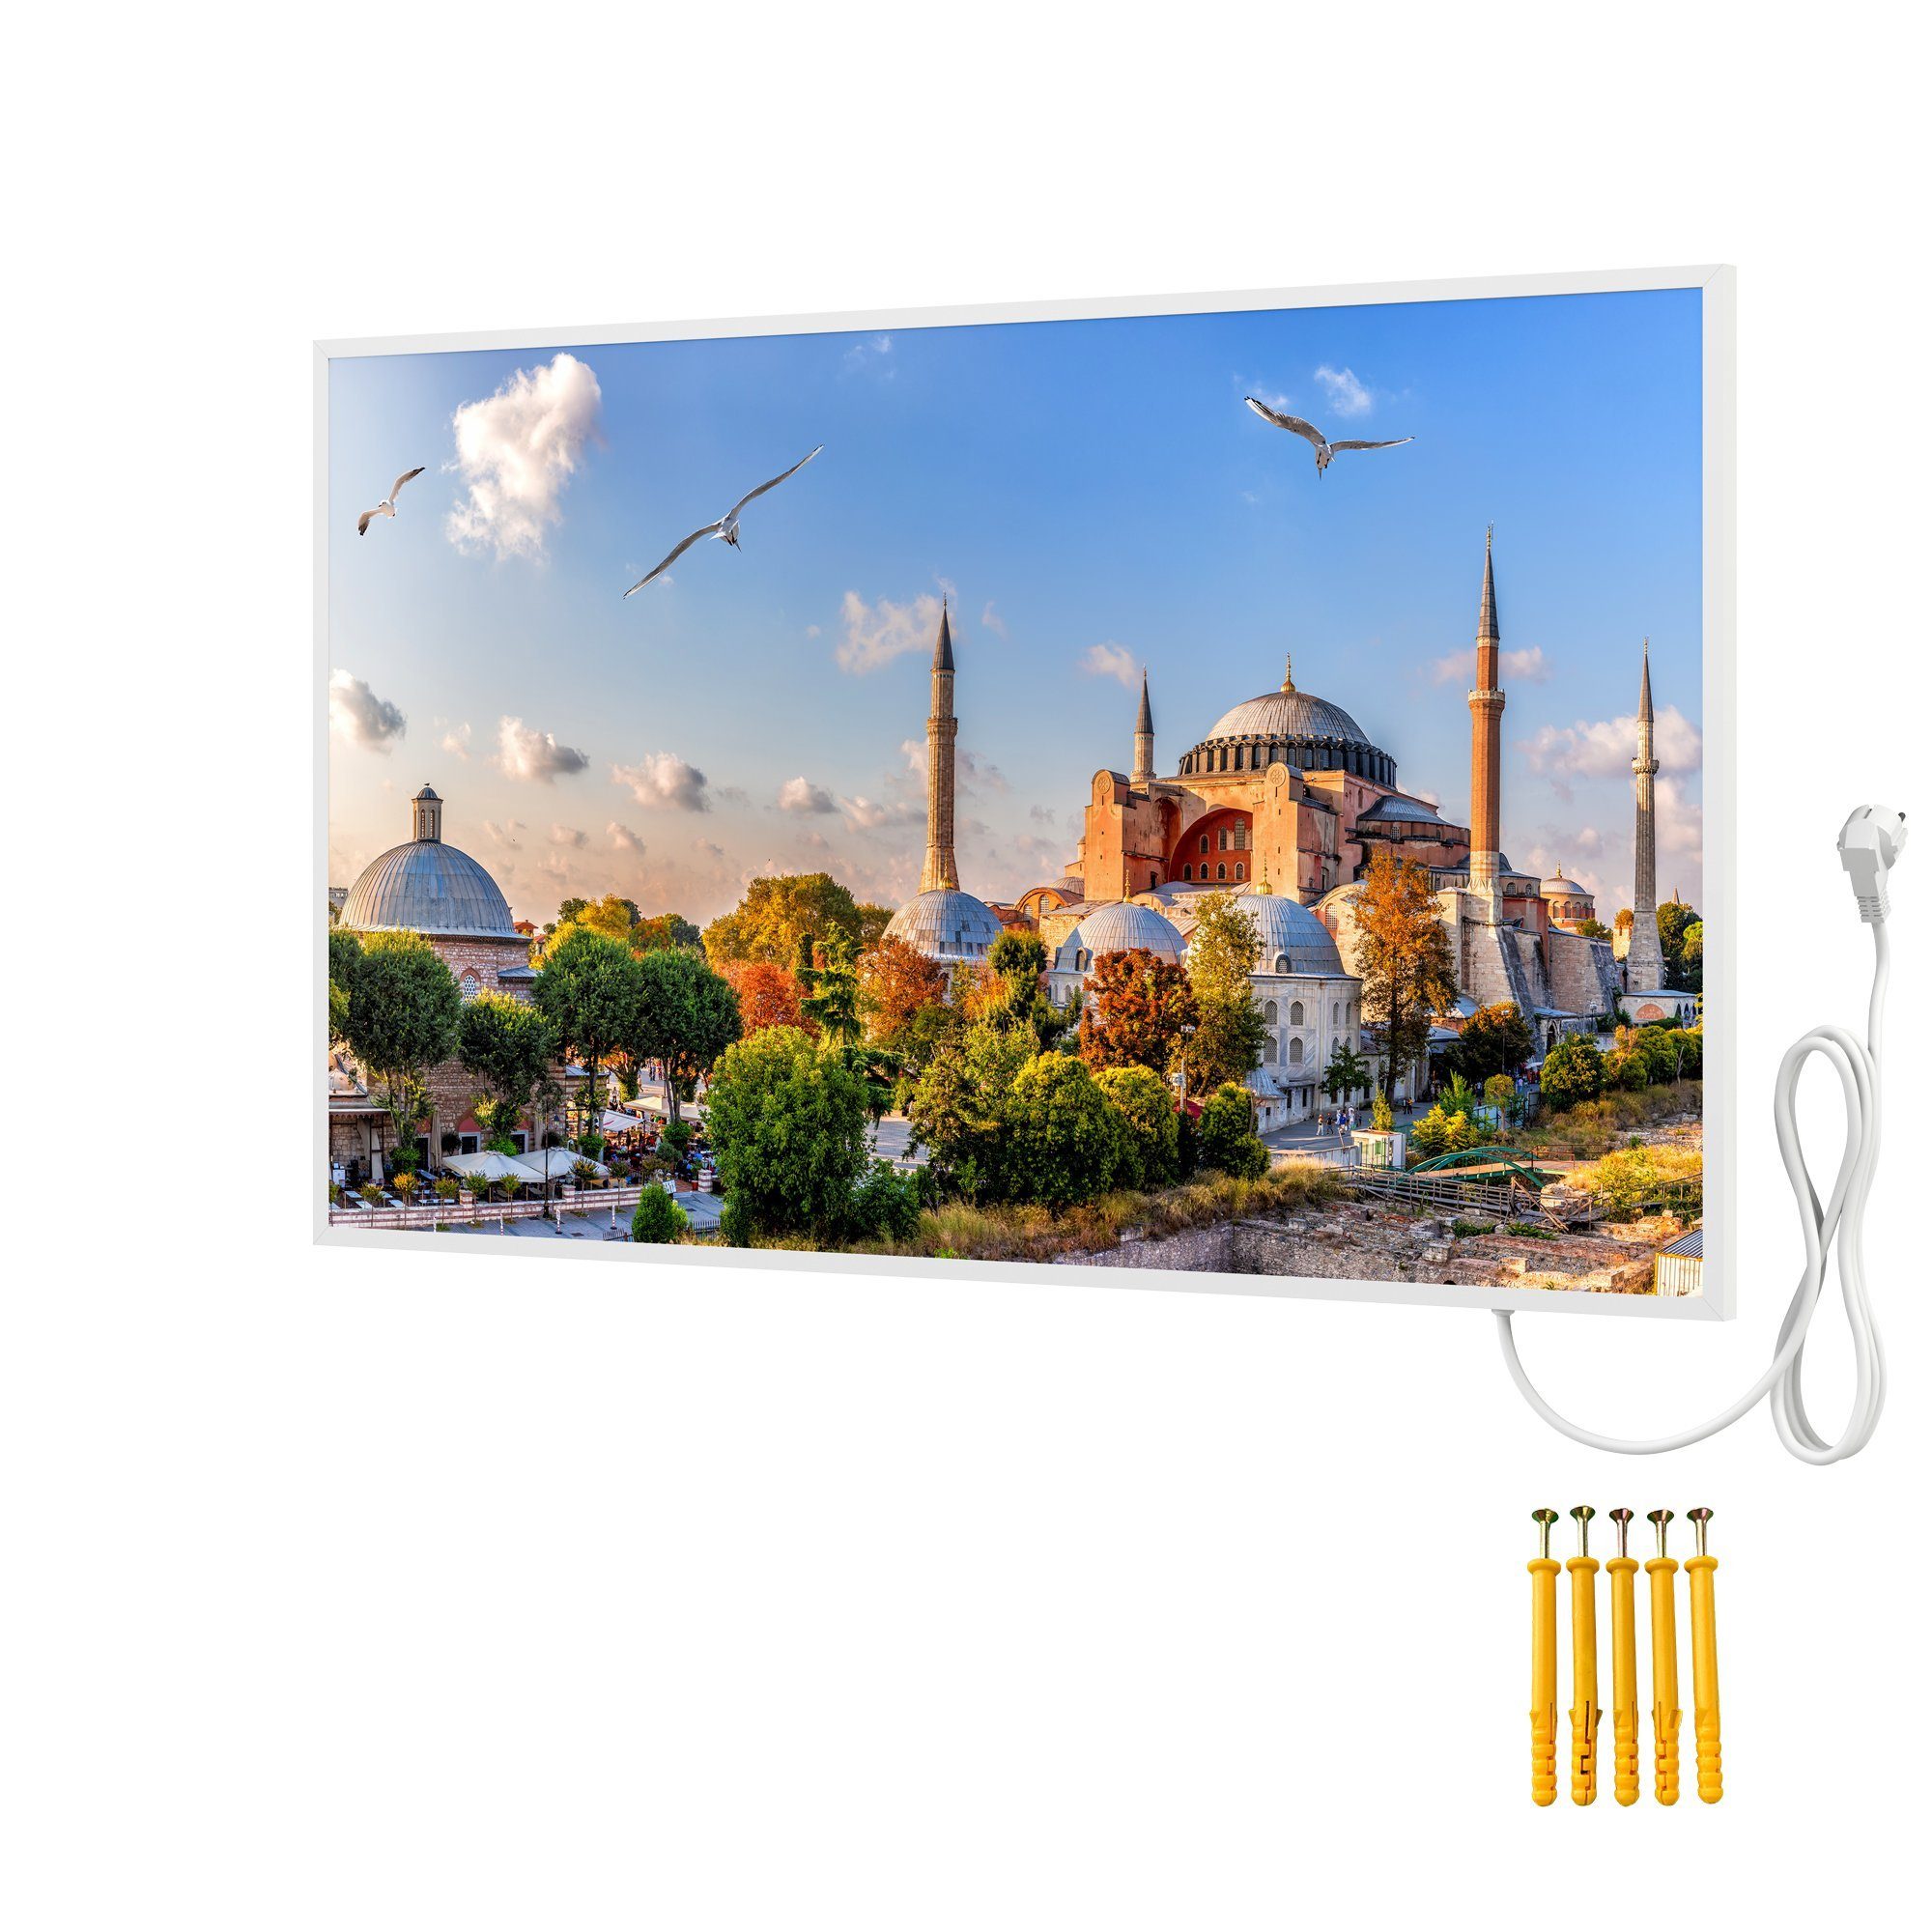 Türkei Infrarotheizung Istanbul, Bringer Rahmen, Motiv: Bildheizung, mit Infrarotheizung Bild